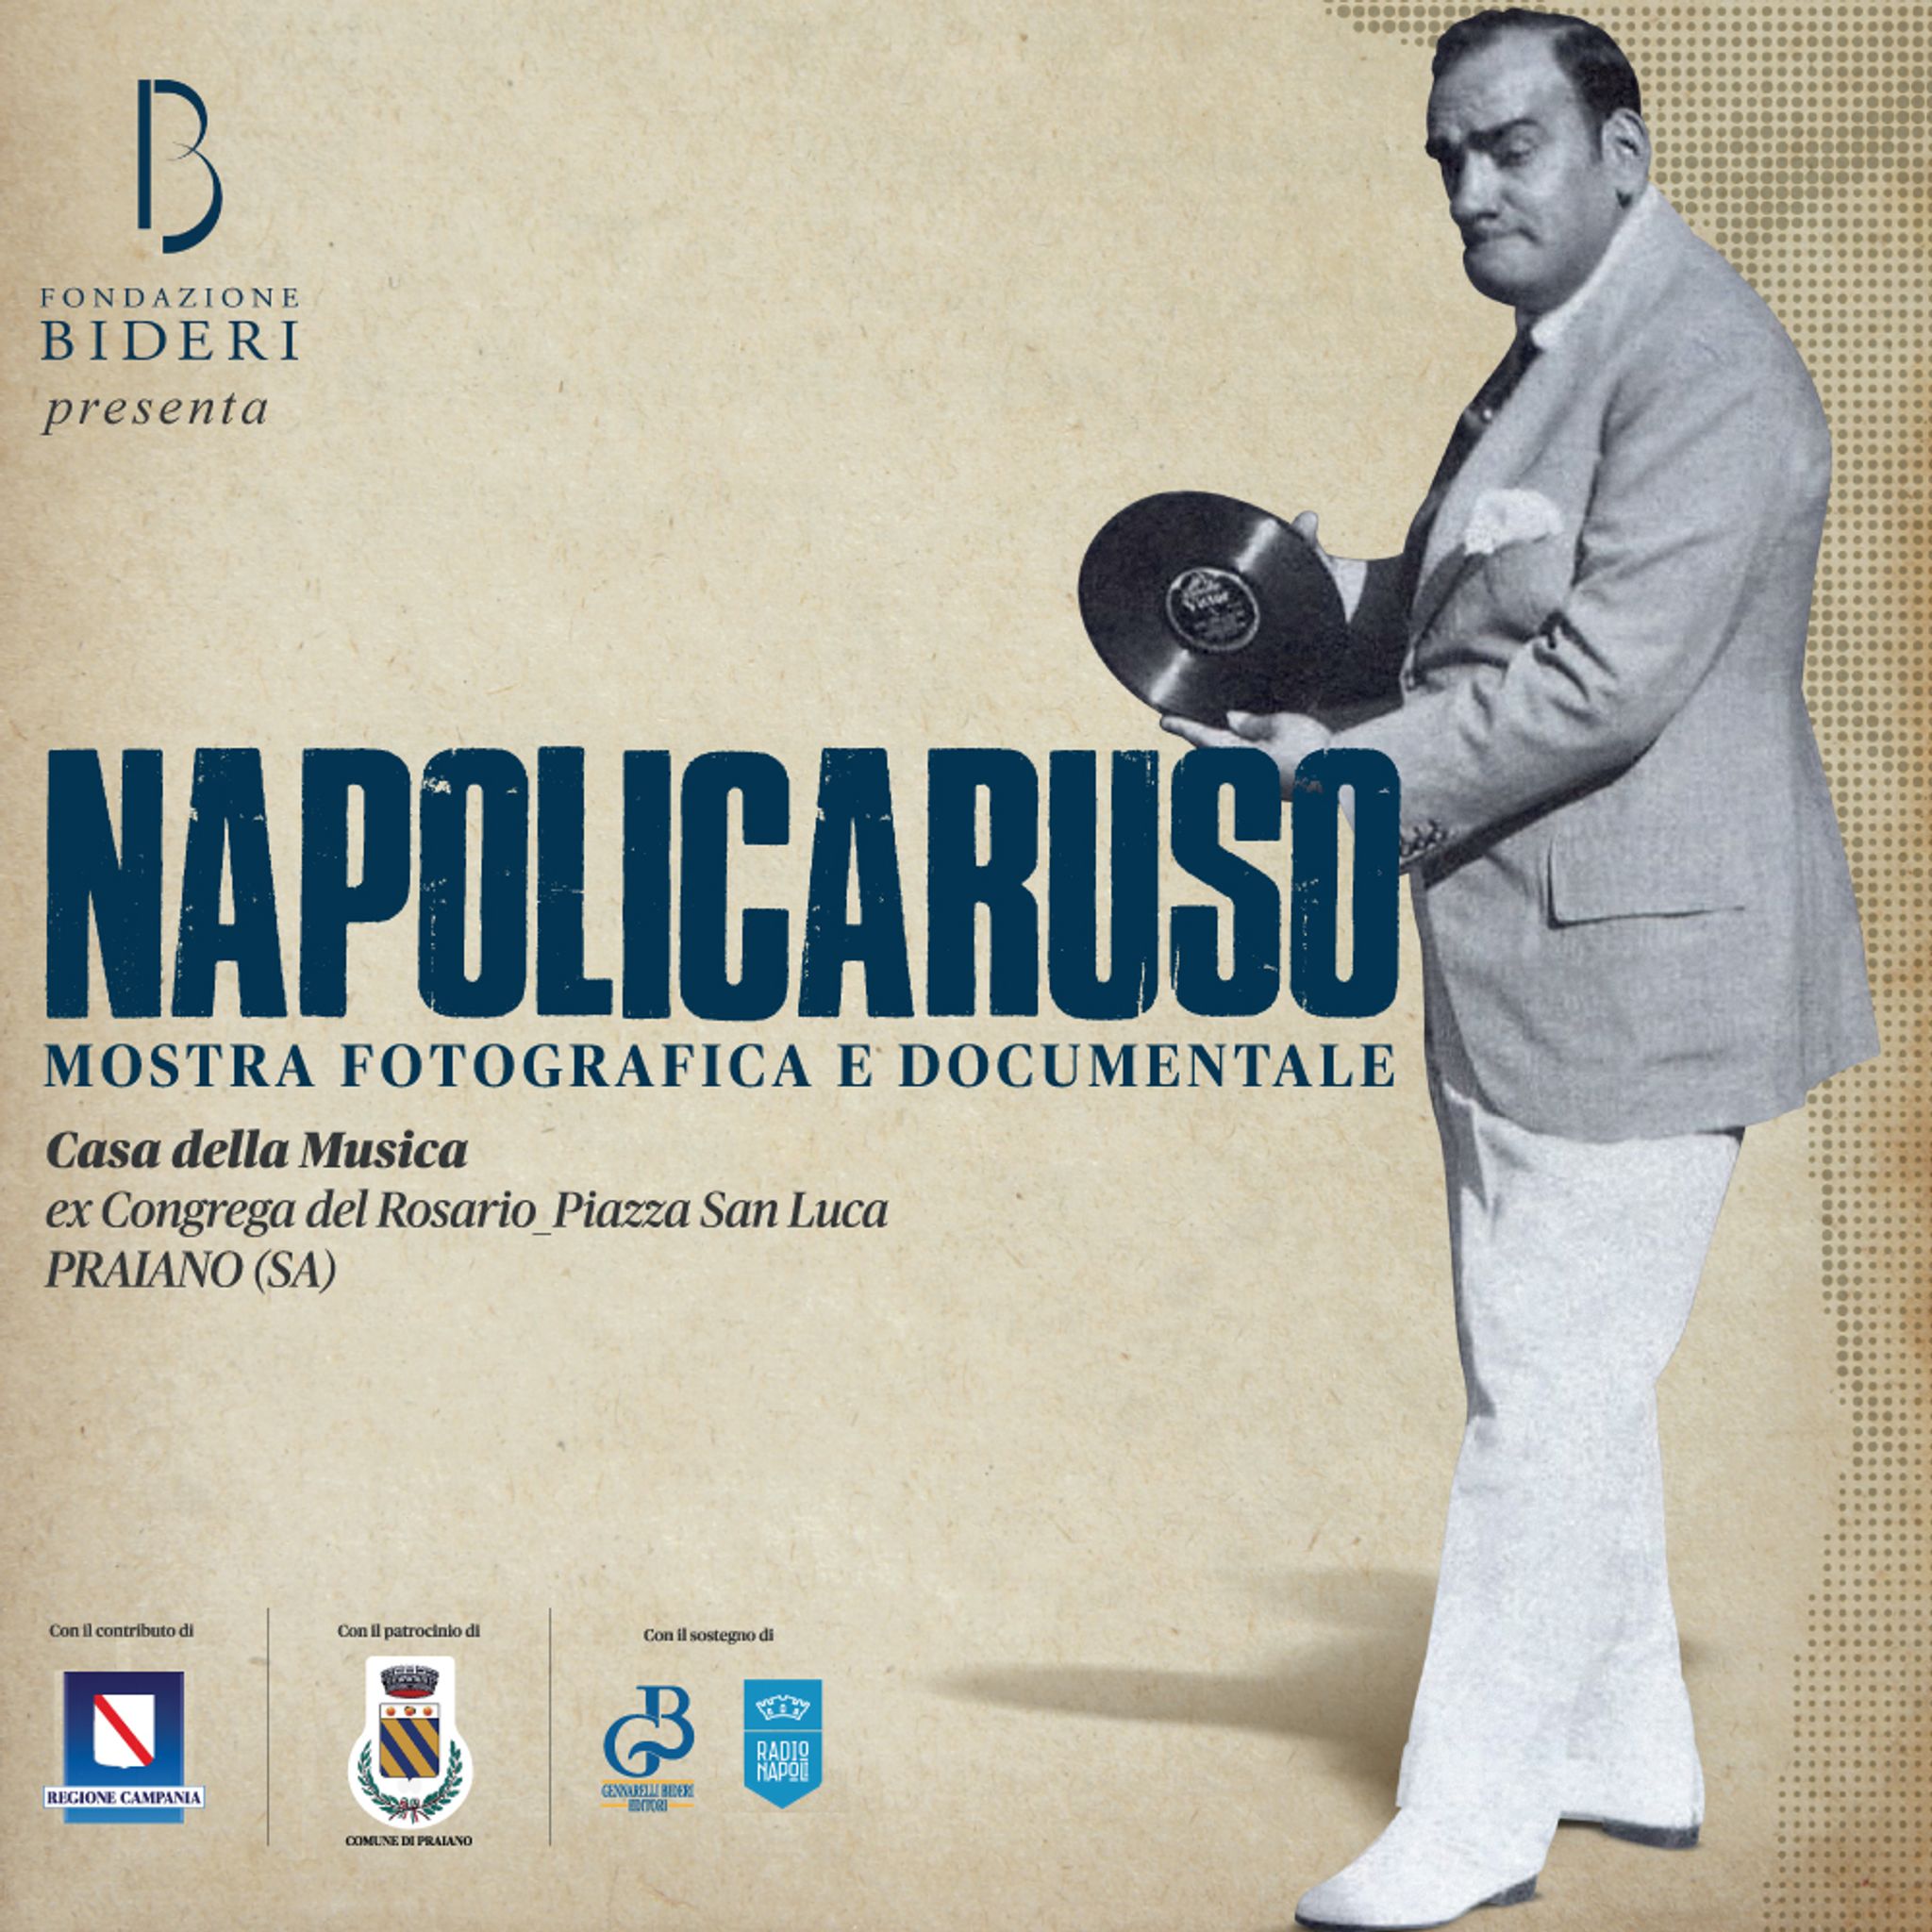 NapoliCaruso, mostra fotografica e documentale